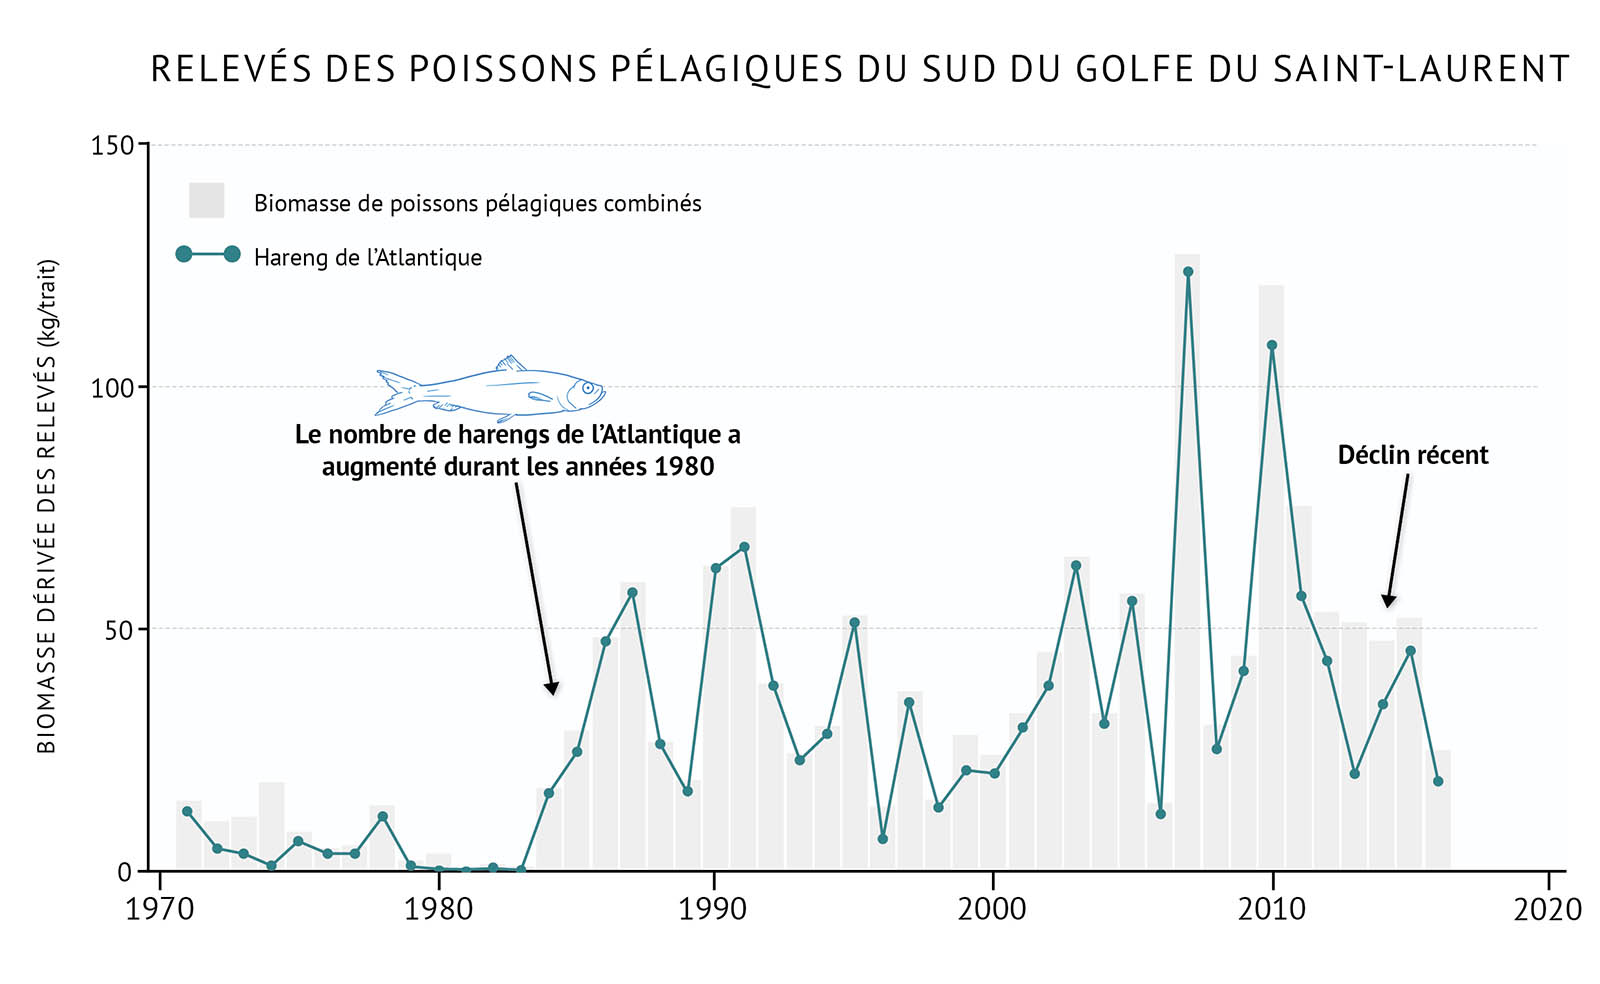 Figure 22 : Biomasse totale dérivée des relevés des poissons pélagiques et du hareng de l’Atlantique dans le sud du golfe du Saint-Laurent. Un graphique linéaire et à barres illustre la biomasse du relevé pour l’ensemble des poissons pélagiques et le hareng de l’Atlantique dans le sud du golfe du Saint-Laurent. Le texte au-dessus du graphique indique « Relevés des poissons pélagiques du sud du golfe du Saint-Laurent ». L’axe vertical de gauche représente la biomasse du relevé en kilogrammes par trait de 0 à 150, par incréments de 50. L’axe horizontal inférieur représente les années entre 1970 et 2020 par tranches de 10 ans. La biomasse du relevé de l'ensemble des poissons pélagiques est représentée par les barres verticales grises. La biomasse du relevé de l’ensemble des poissons pélagiques est faible tout au long des années 1970, mais elle augmente rapidement dans les années 1980. Elle fluctue ensuite généralement entre environ 25 et 50 kilogrammes par trait, avec deux pics à plus de 100 kilogrammes par trait à la fin des années 2000 et au début des années 2010. Elle diminue en 2016, qui est la dernière année de données sur le graphique. La biomasse du relevé du hareng de l’Atlantique est représentée par une ligne verte sur le même graphique. Une légende apparaît à gauche. La biomasse du relevé du hareng de l’Atlantique reflète généralement celle de la biomasse du relevé de l'ensemble des poissons pélagiques. Elle est faible dans les années 1970, puis elle augmente dans les années 1980 et demeure essentiellement entre 25 et 50 kilogrammes par trait, avec deux pics au-dessus de 100 kilogrammes par trait à la fin des années 2000 et au début des années 2010. Puis, dans les années 2010, elle baisse. Un petit dessin bleu clair d’un hareng de l’Atlantique est placé au-dessus des barres verticales sur la gauche du graphique. Sous le dessin, un texte indique « Le nombre de harengs de l’Atlantique a augmenté durant les années 1980 ». Une flèche pointe vers la période du milieu des années 1980. Une autre ligne de texte sur la droite du graphique indique « Récemment en déclin ». Une flèche pointe du texte vers le milieu des années 2010.